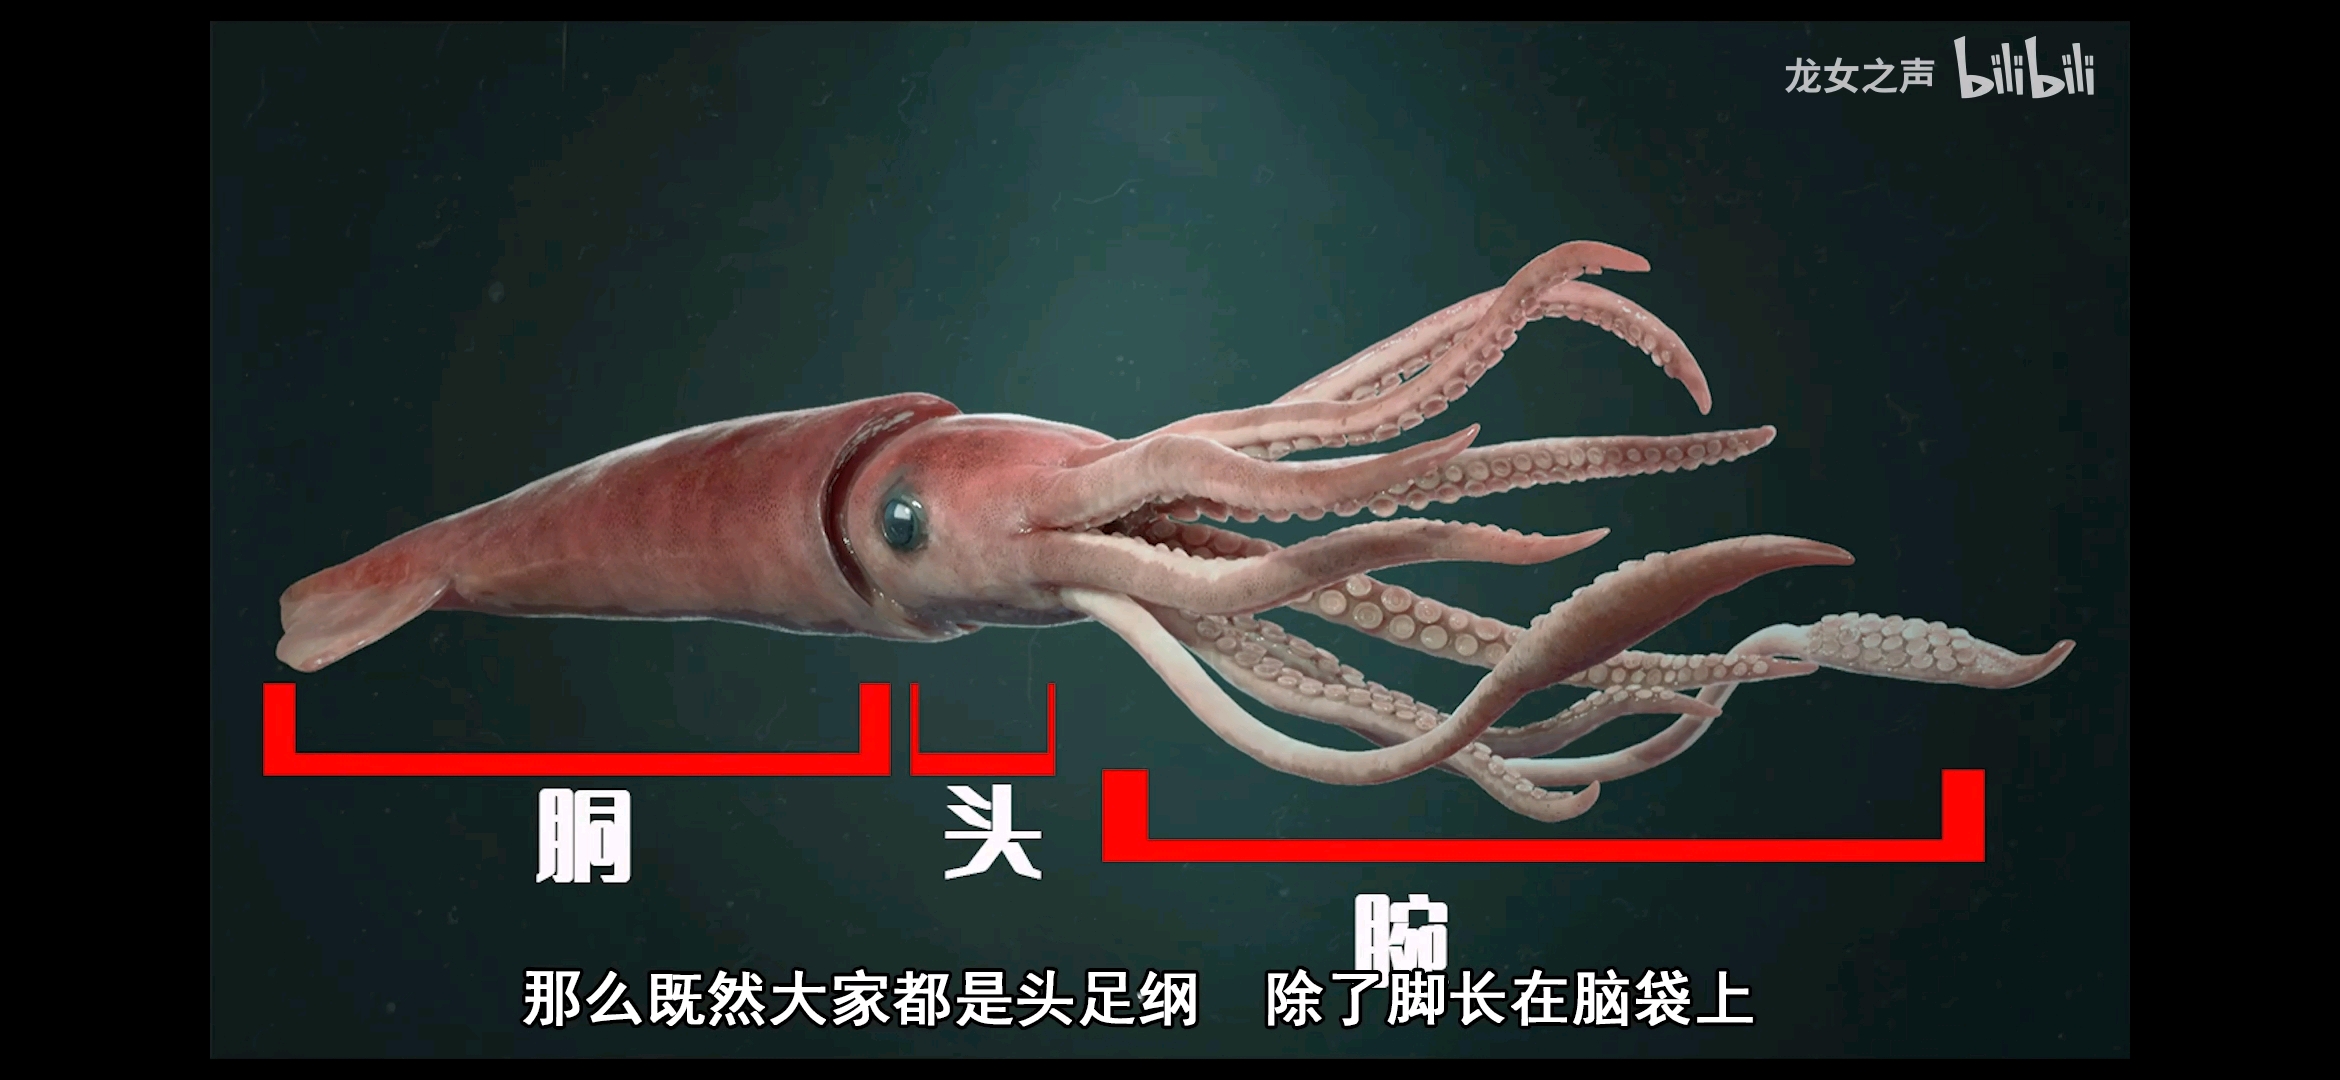 顺便一提,很多人印象中章鱼的身体结构是错误的,把它的头和身体弄反了